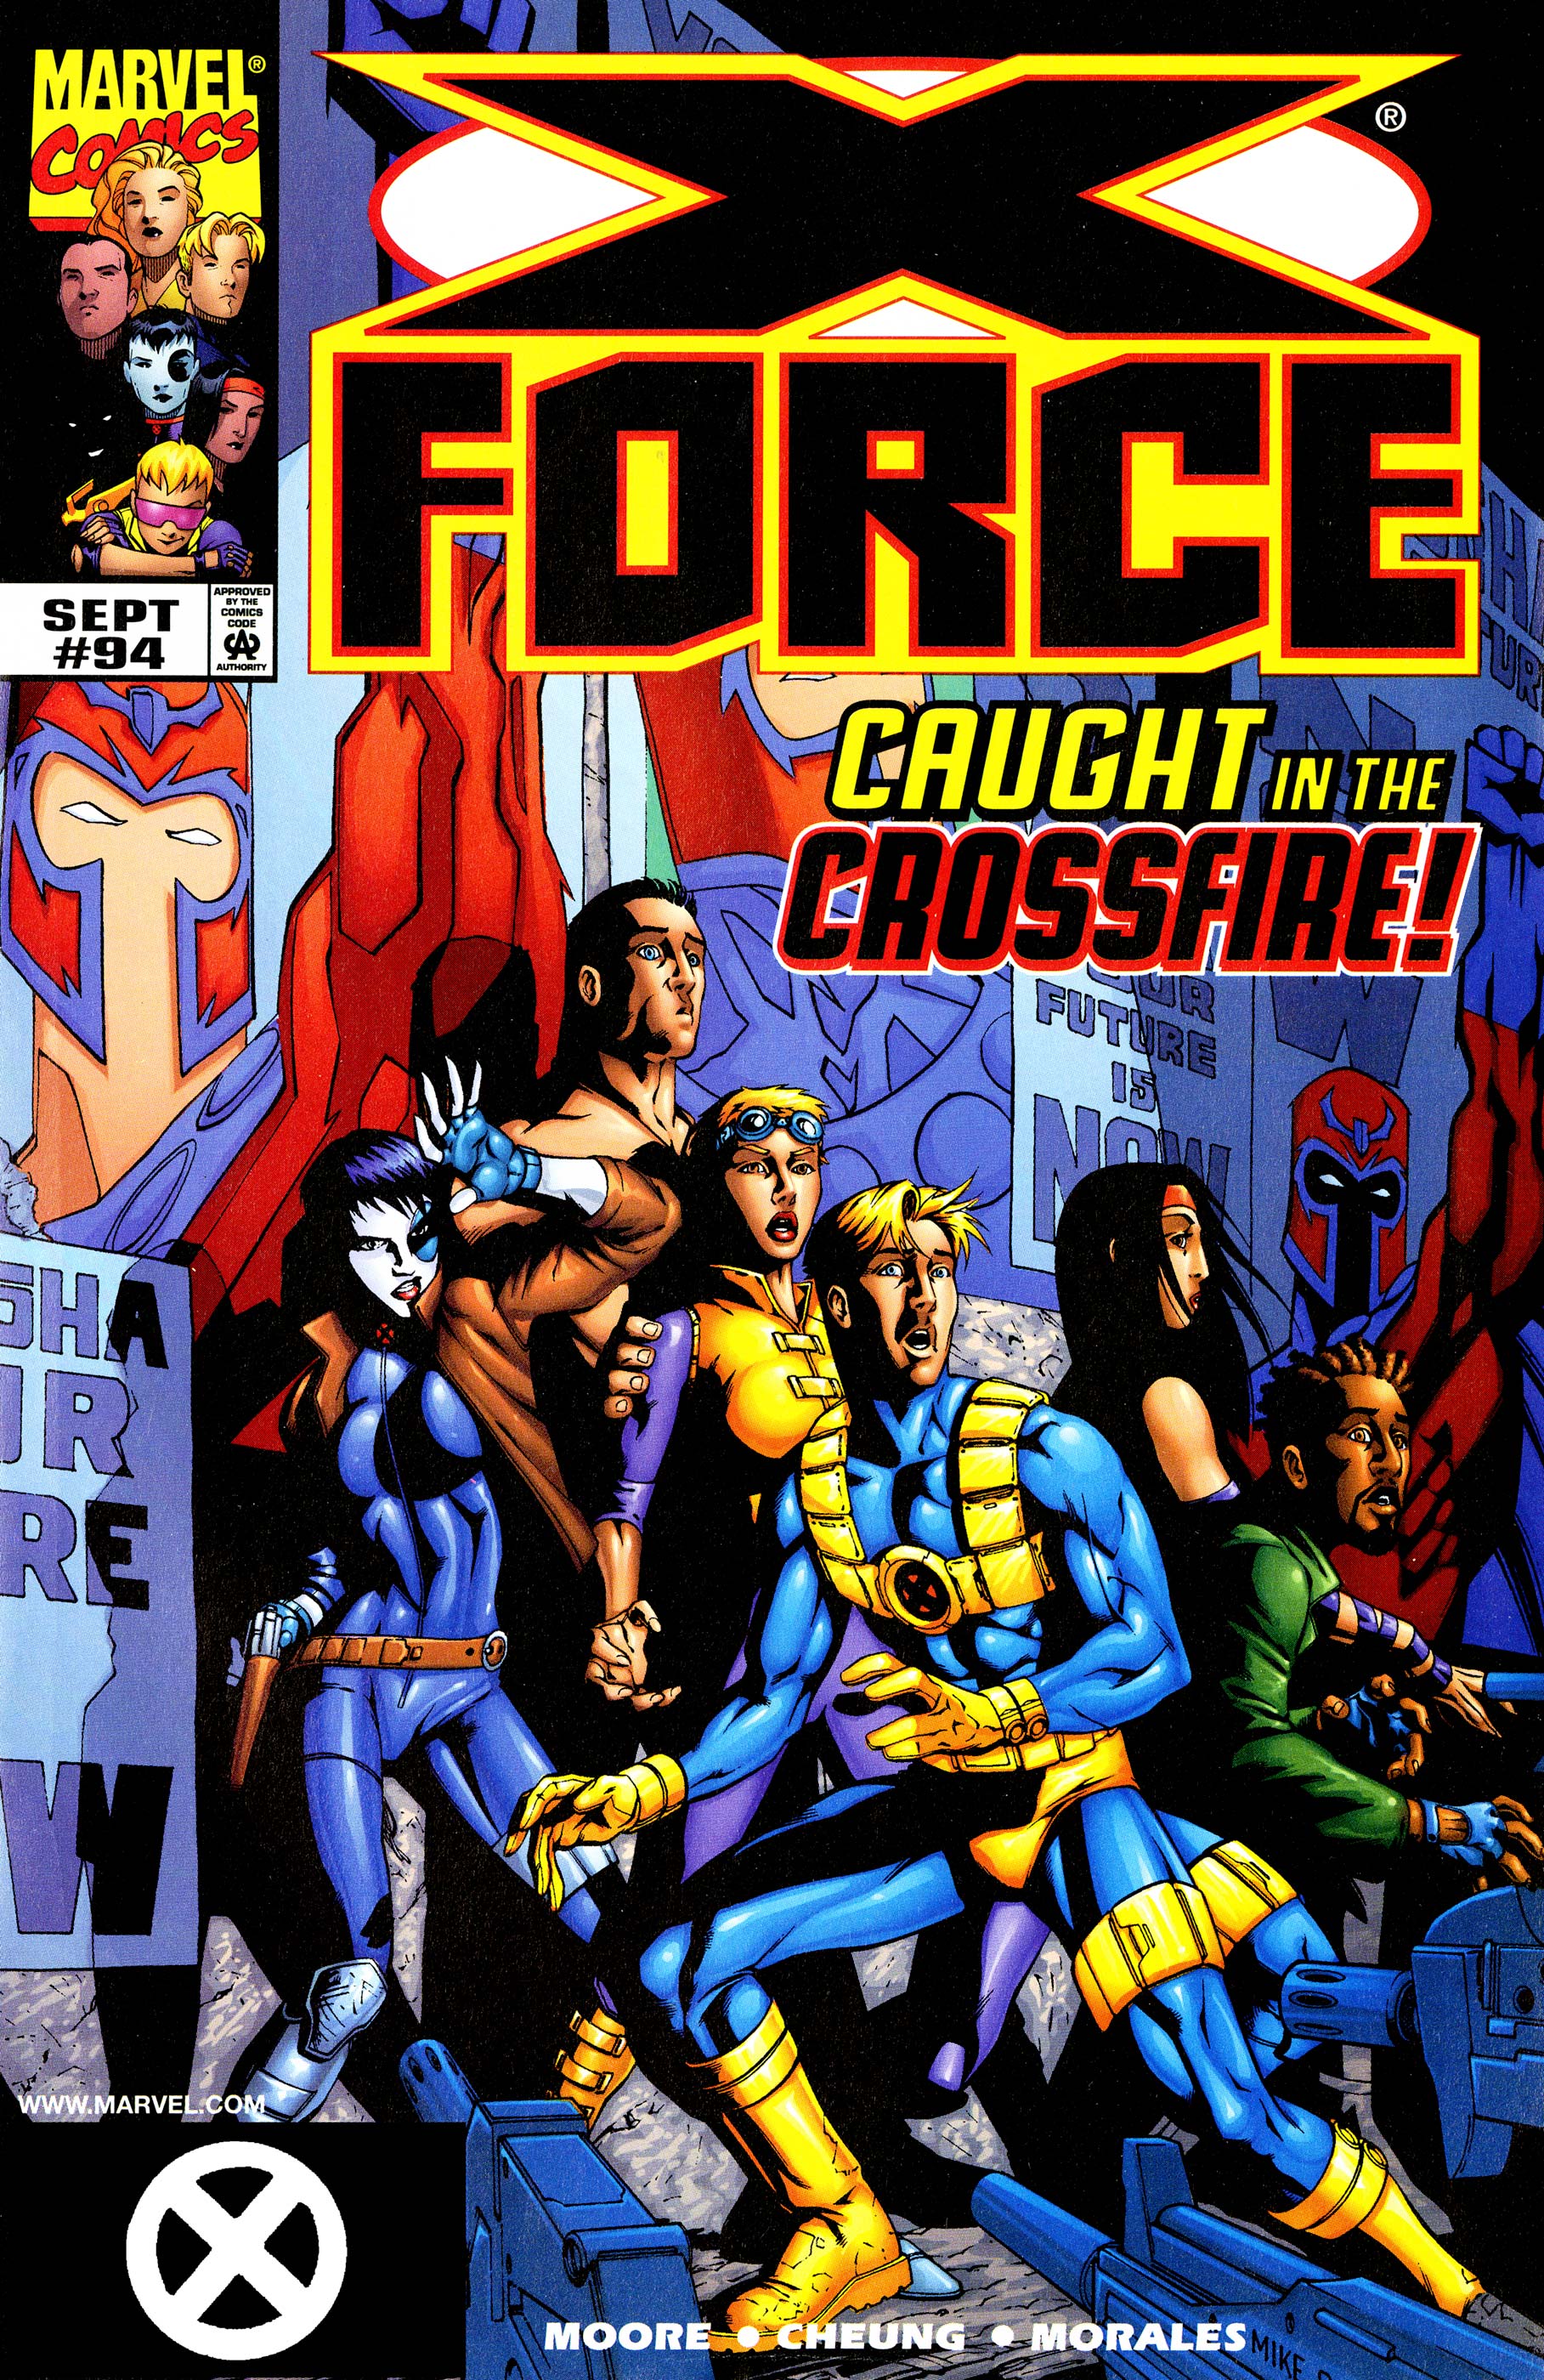 X-Force (1991) #94